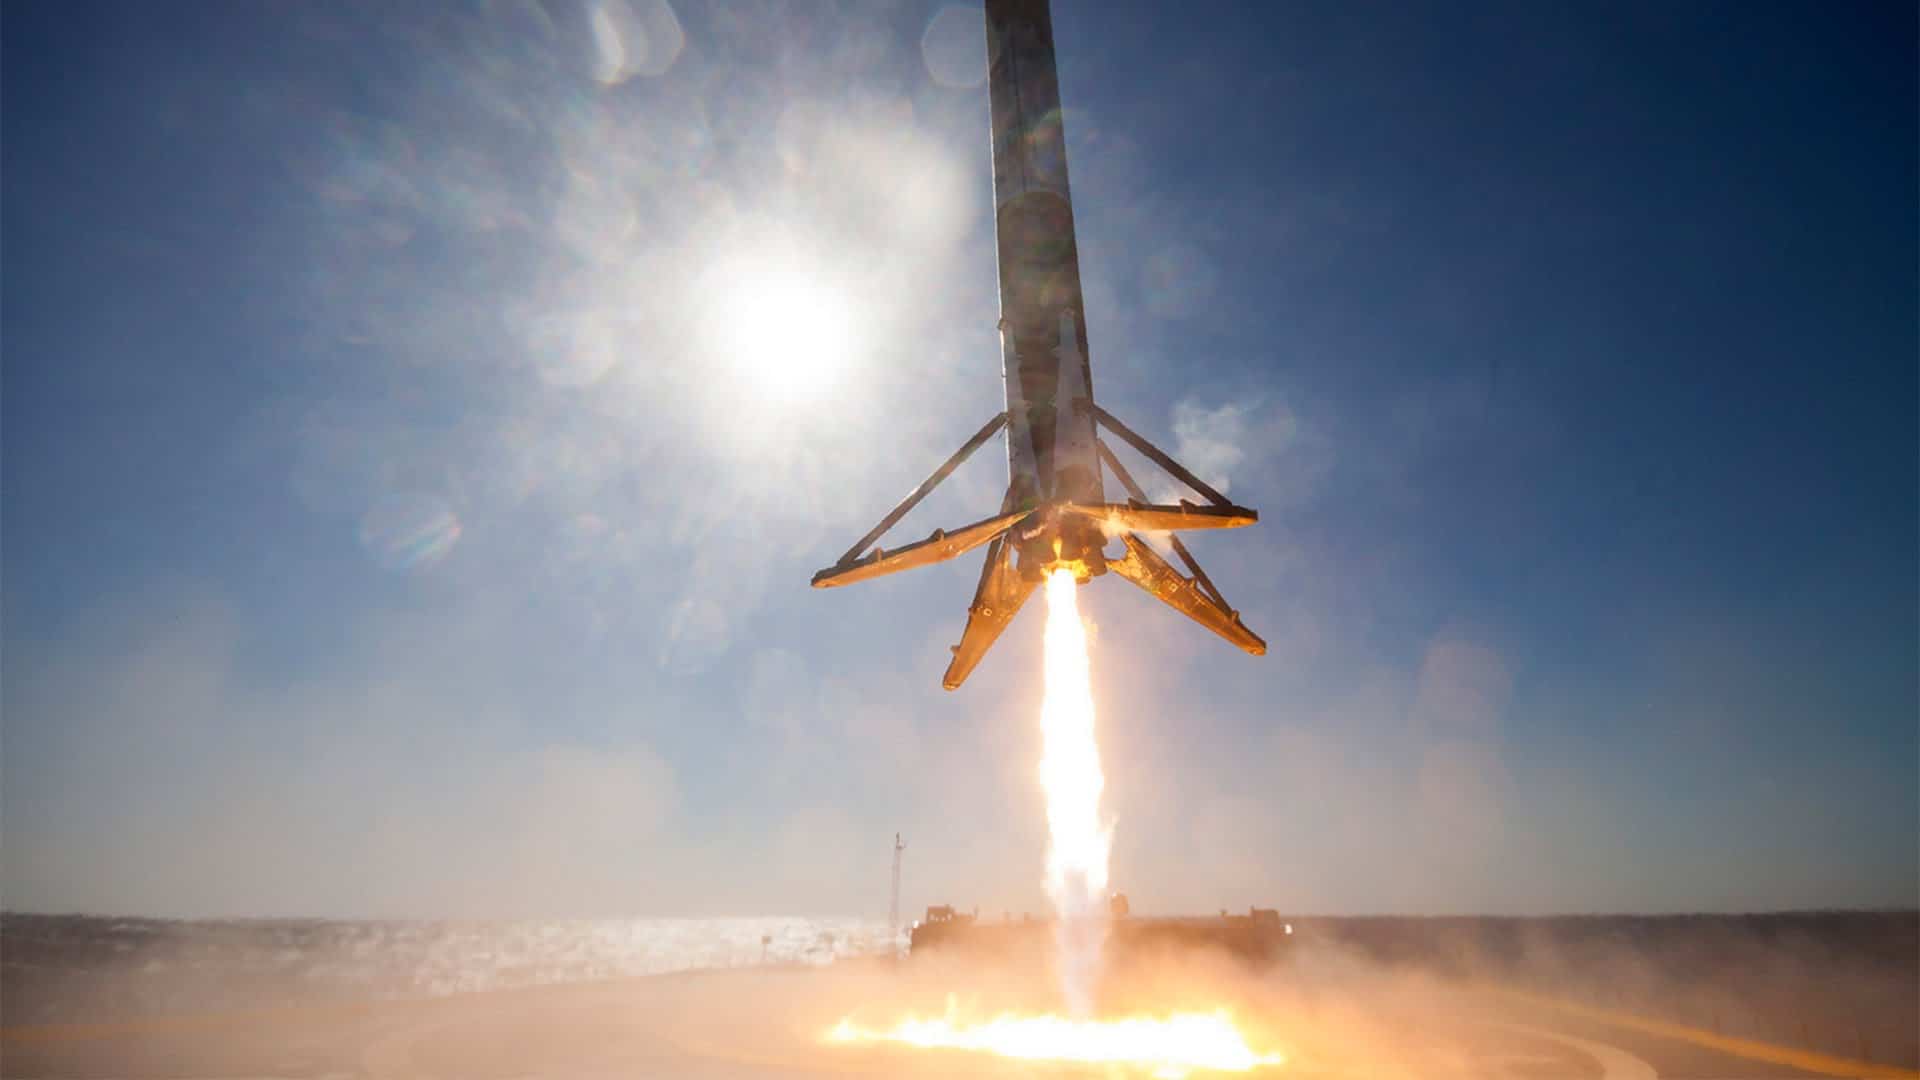 Spektakuläres 360° Video einer SpaceX Landung